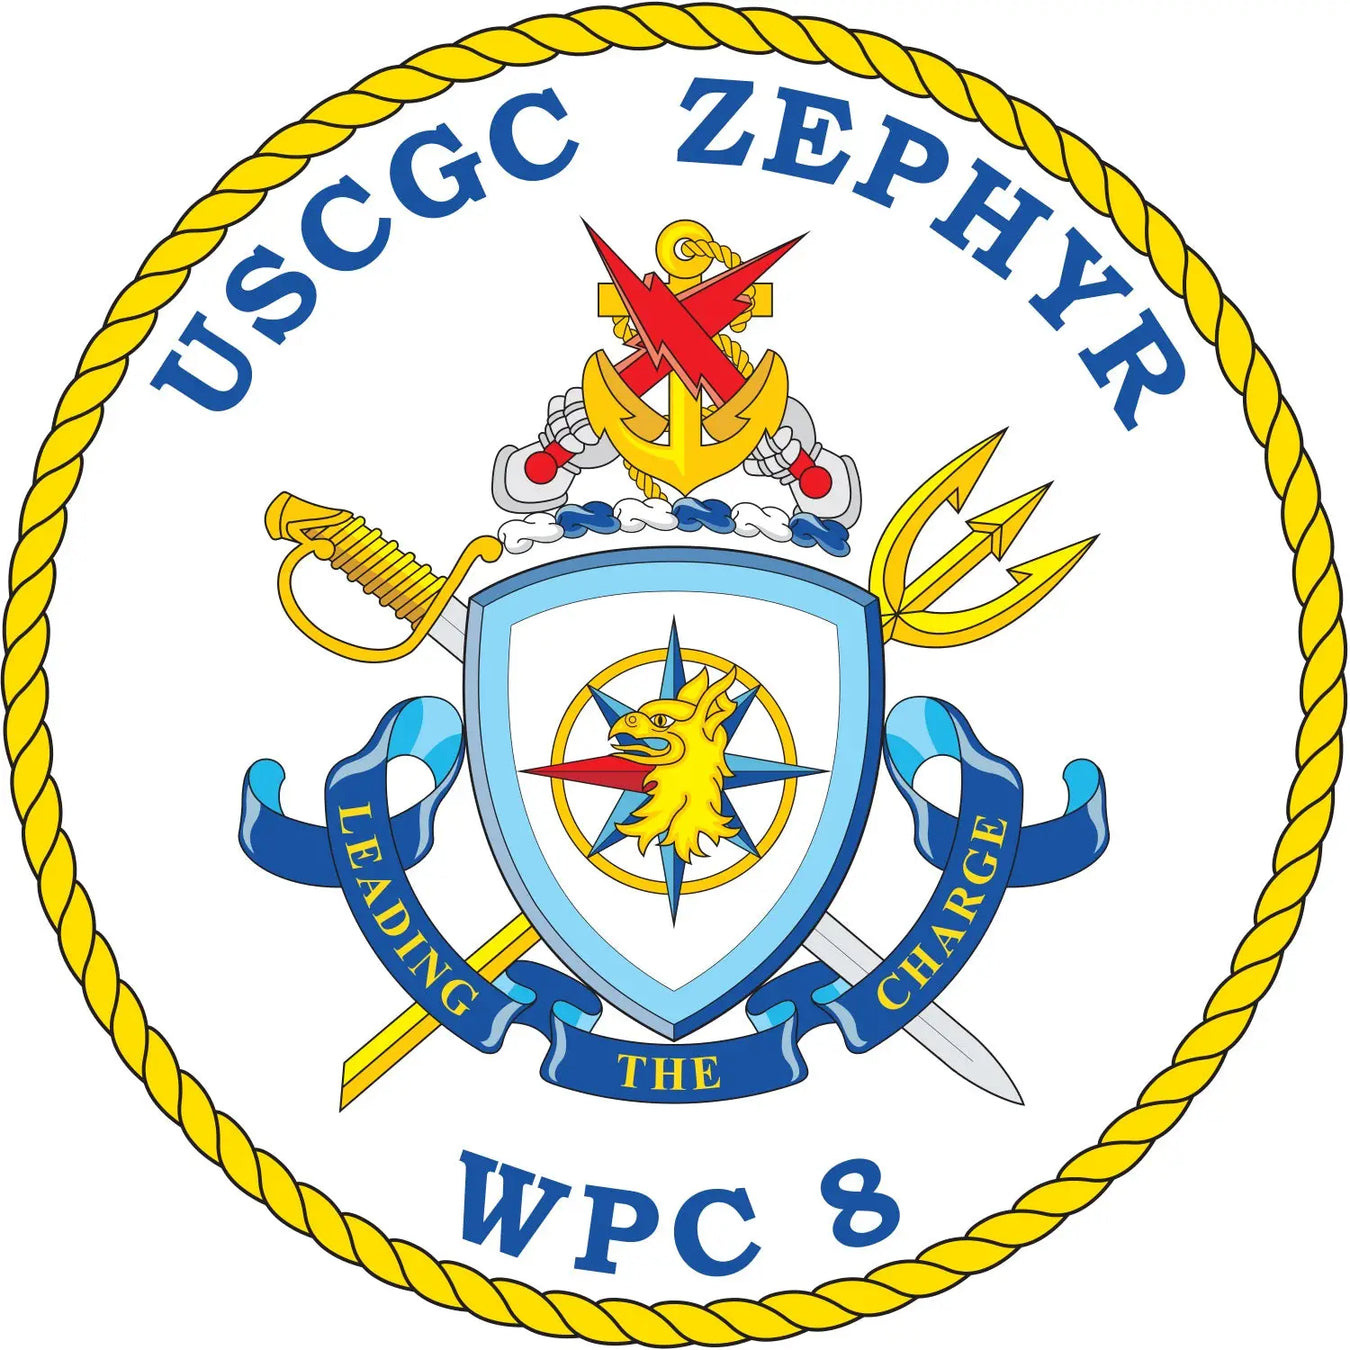 USCGC Zephyer (WPC-8)